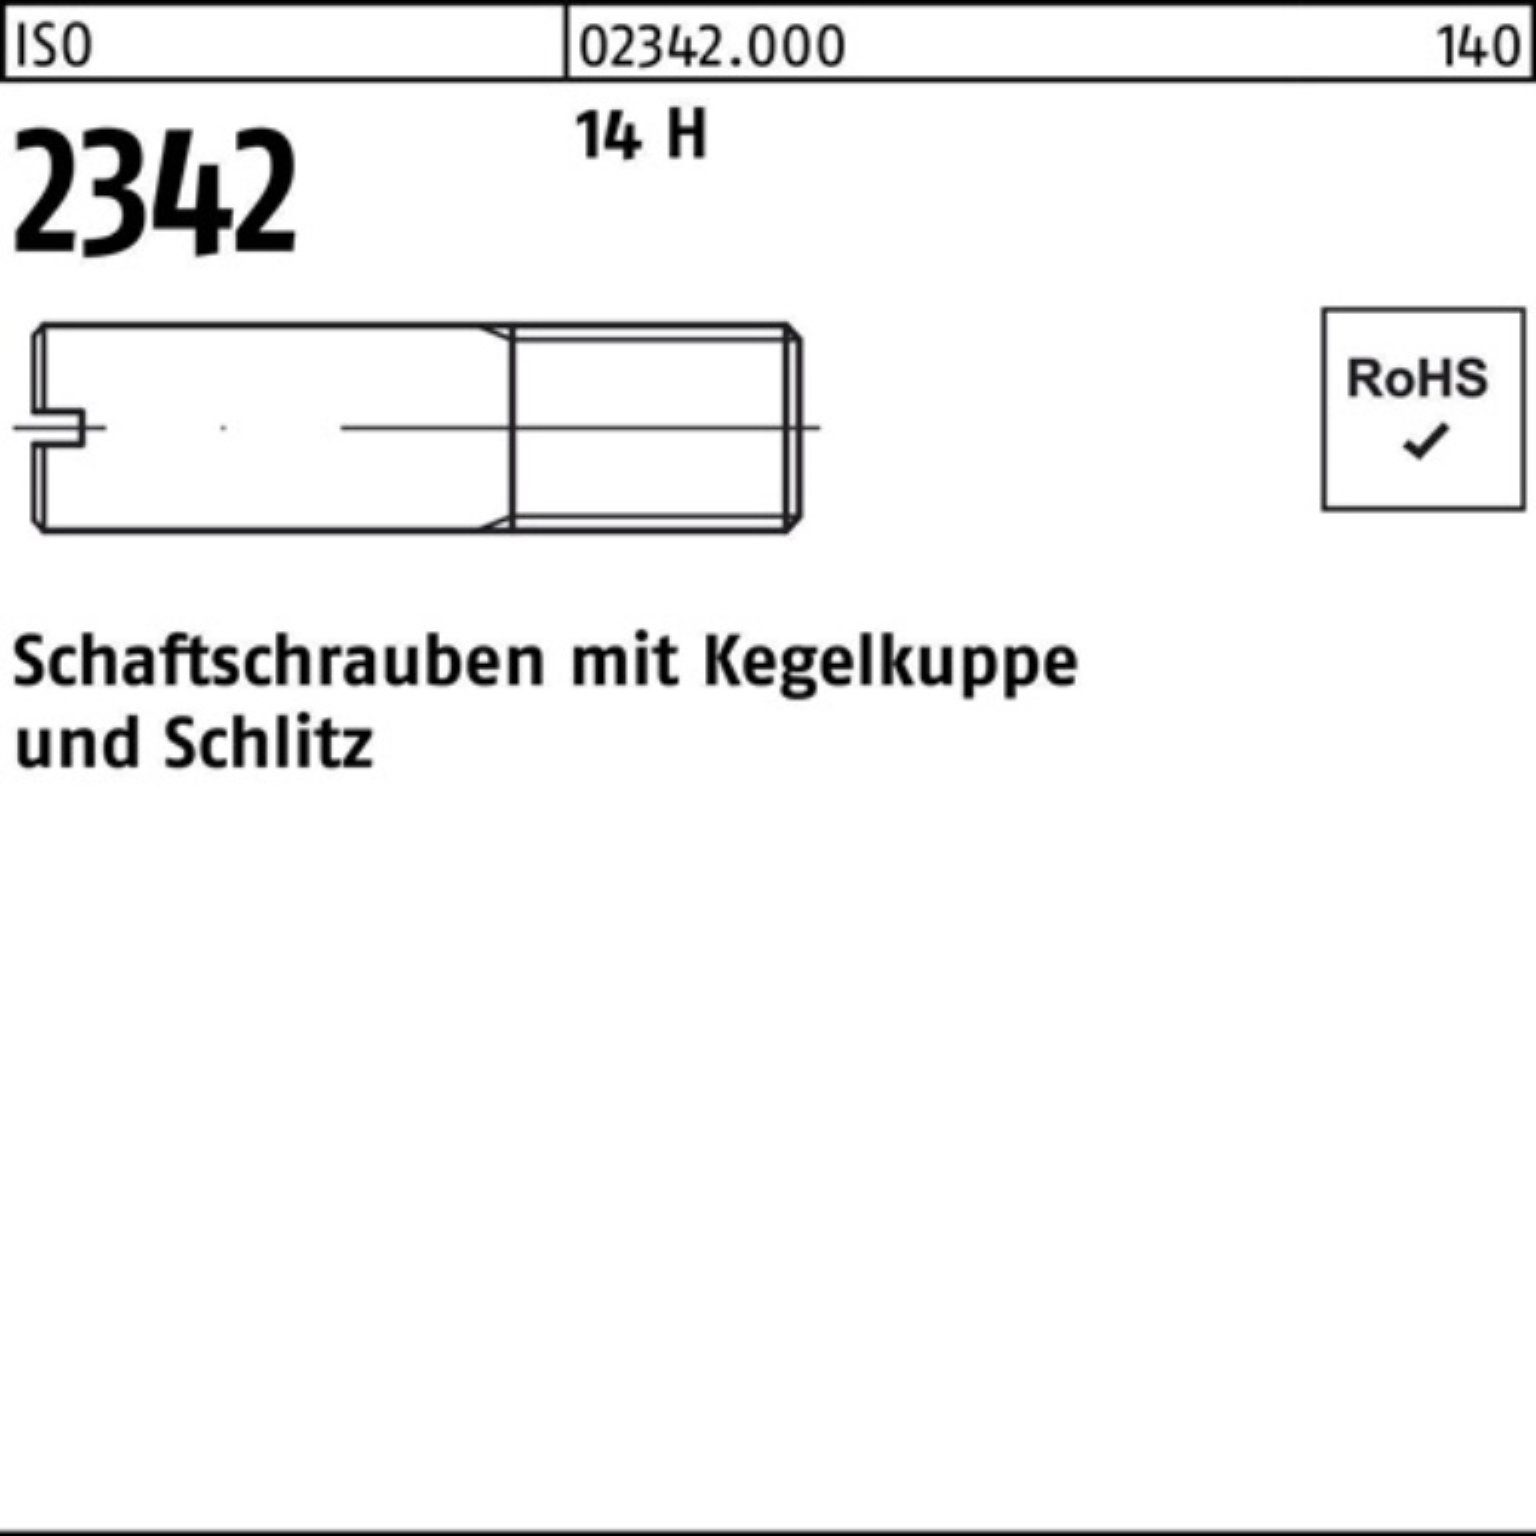 Reyher Schraube 100er Pack Schaftschraube ISO 2342 Kegelkuppe/Schlitz M8x 30 14 H 100